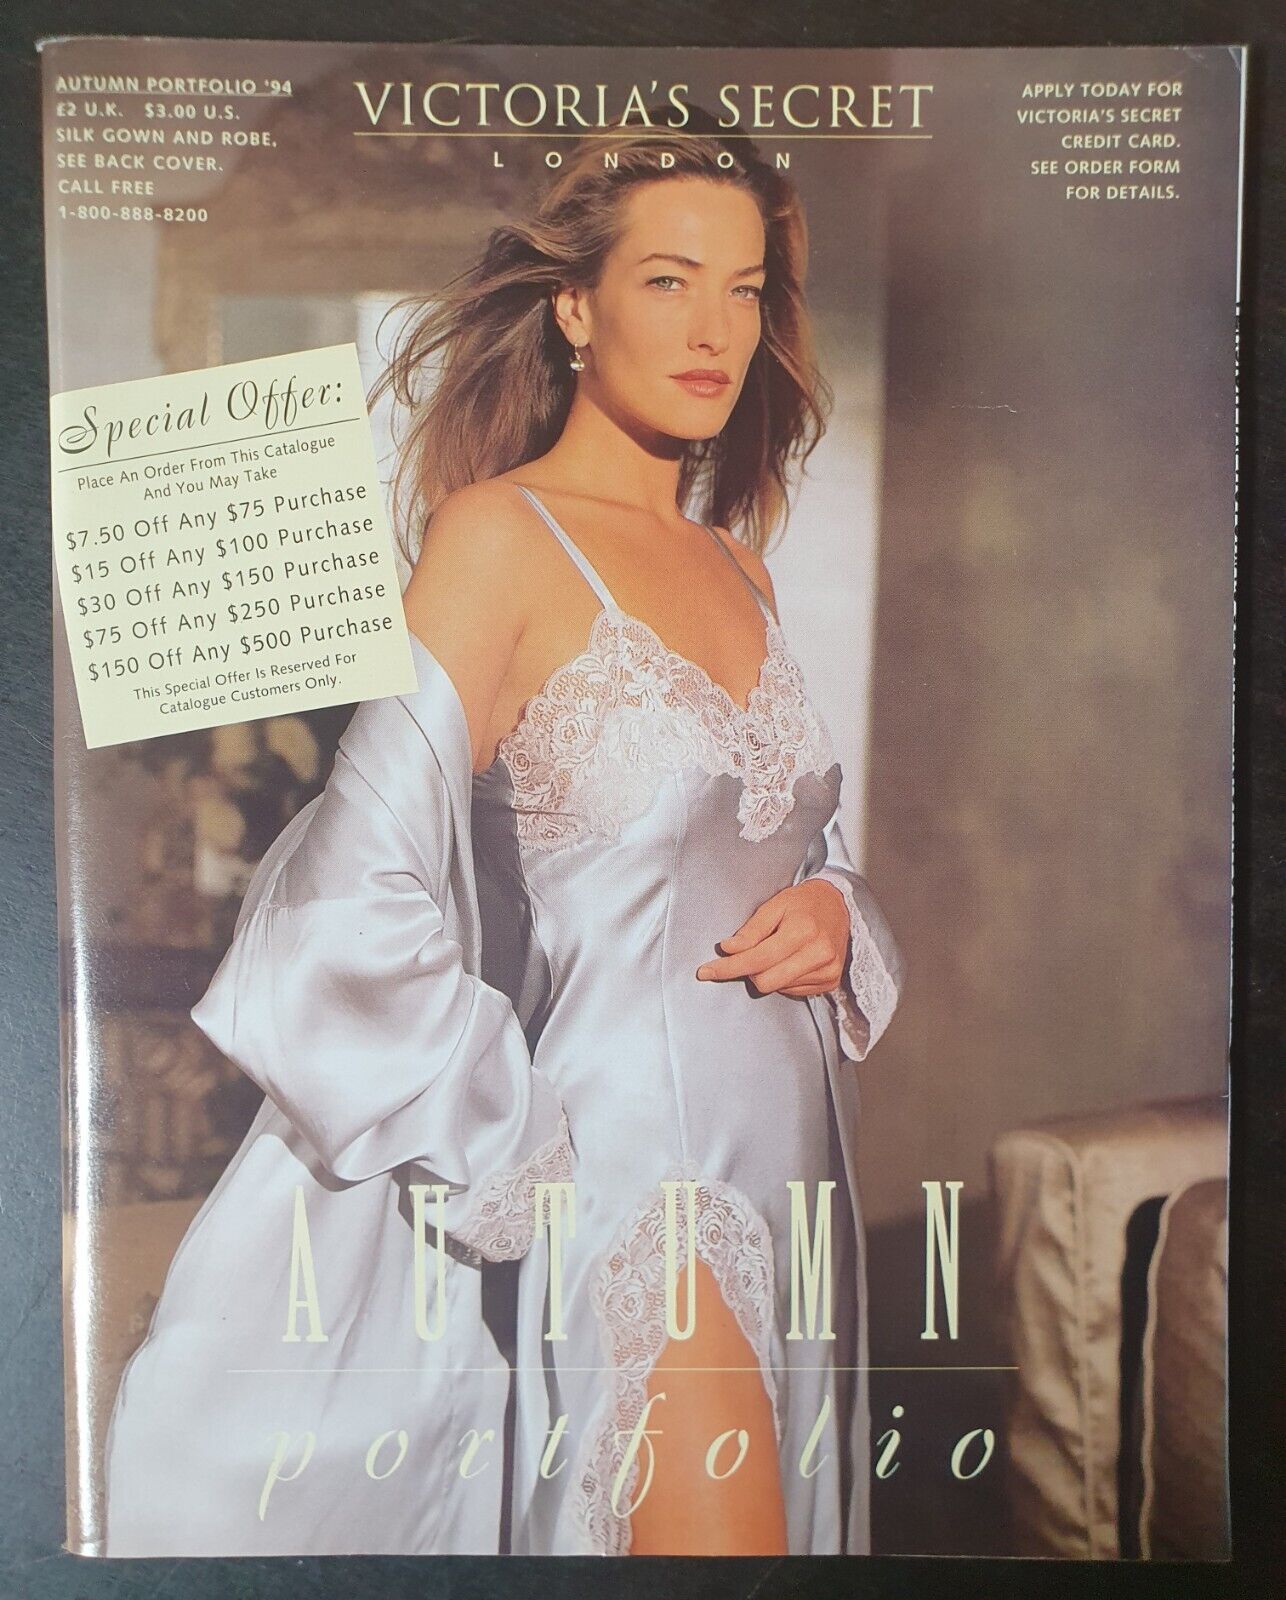 Victoria's Secret Catalog/Autumn Portfolio 1994